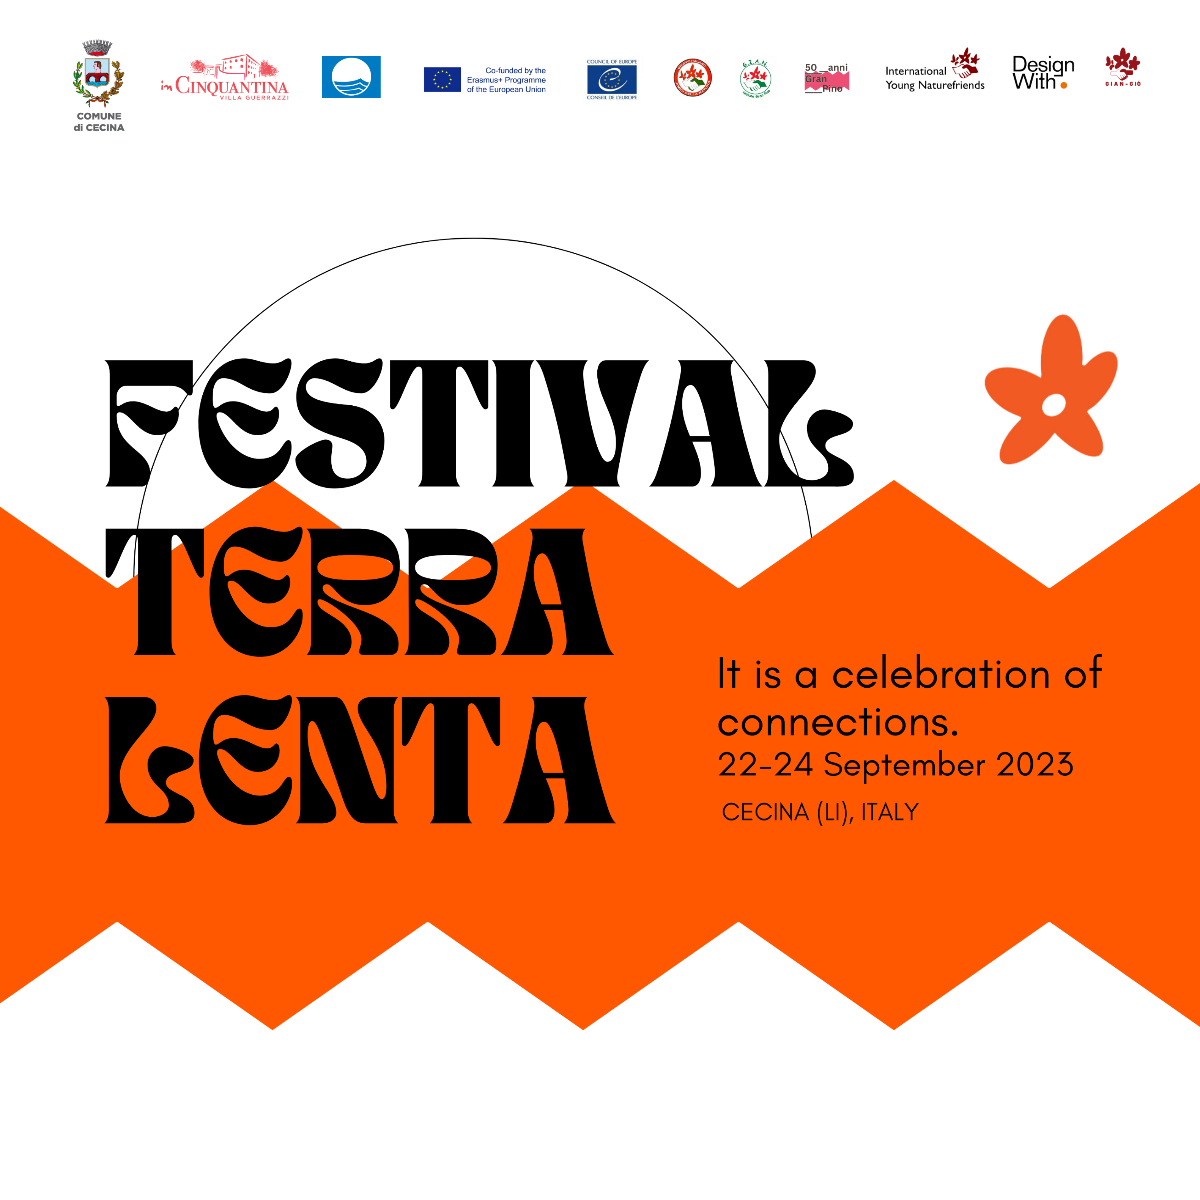 Festival Terra Lenta